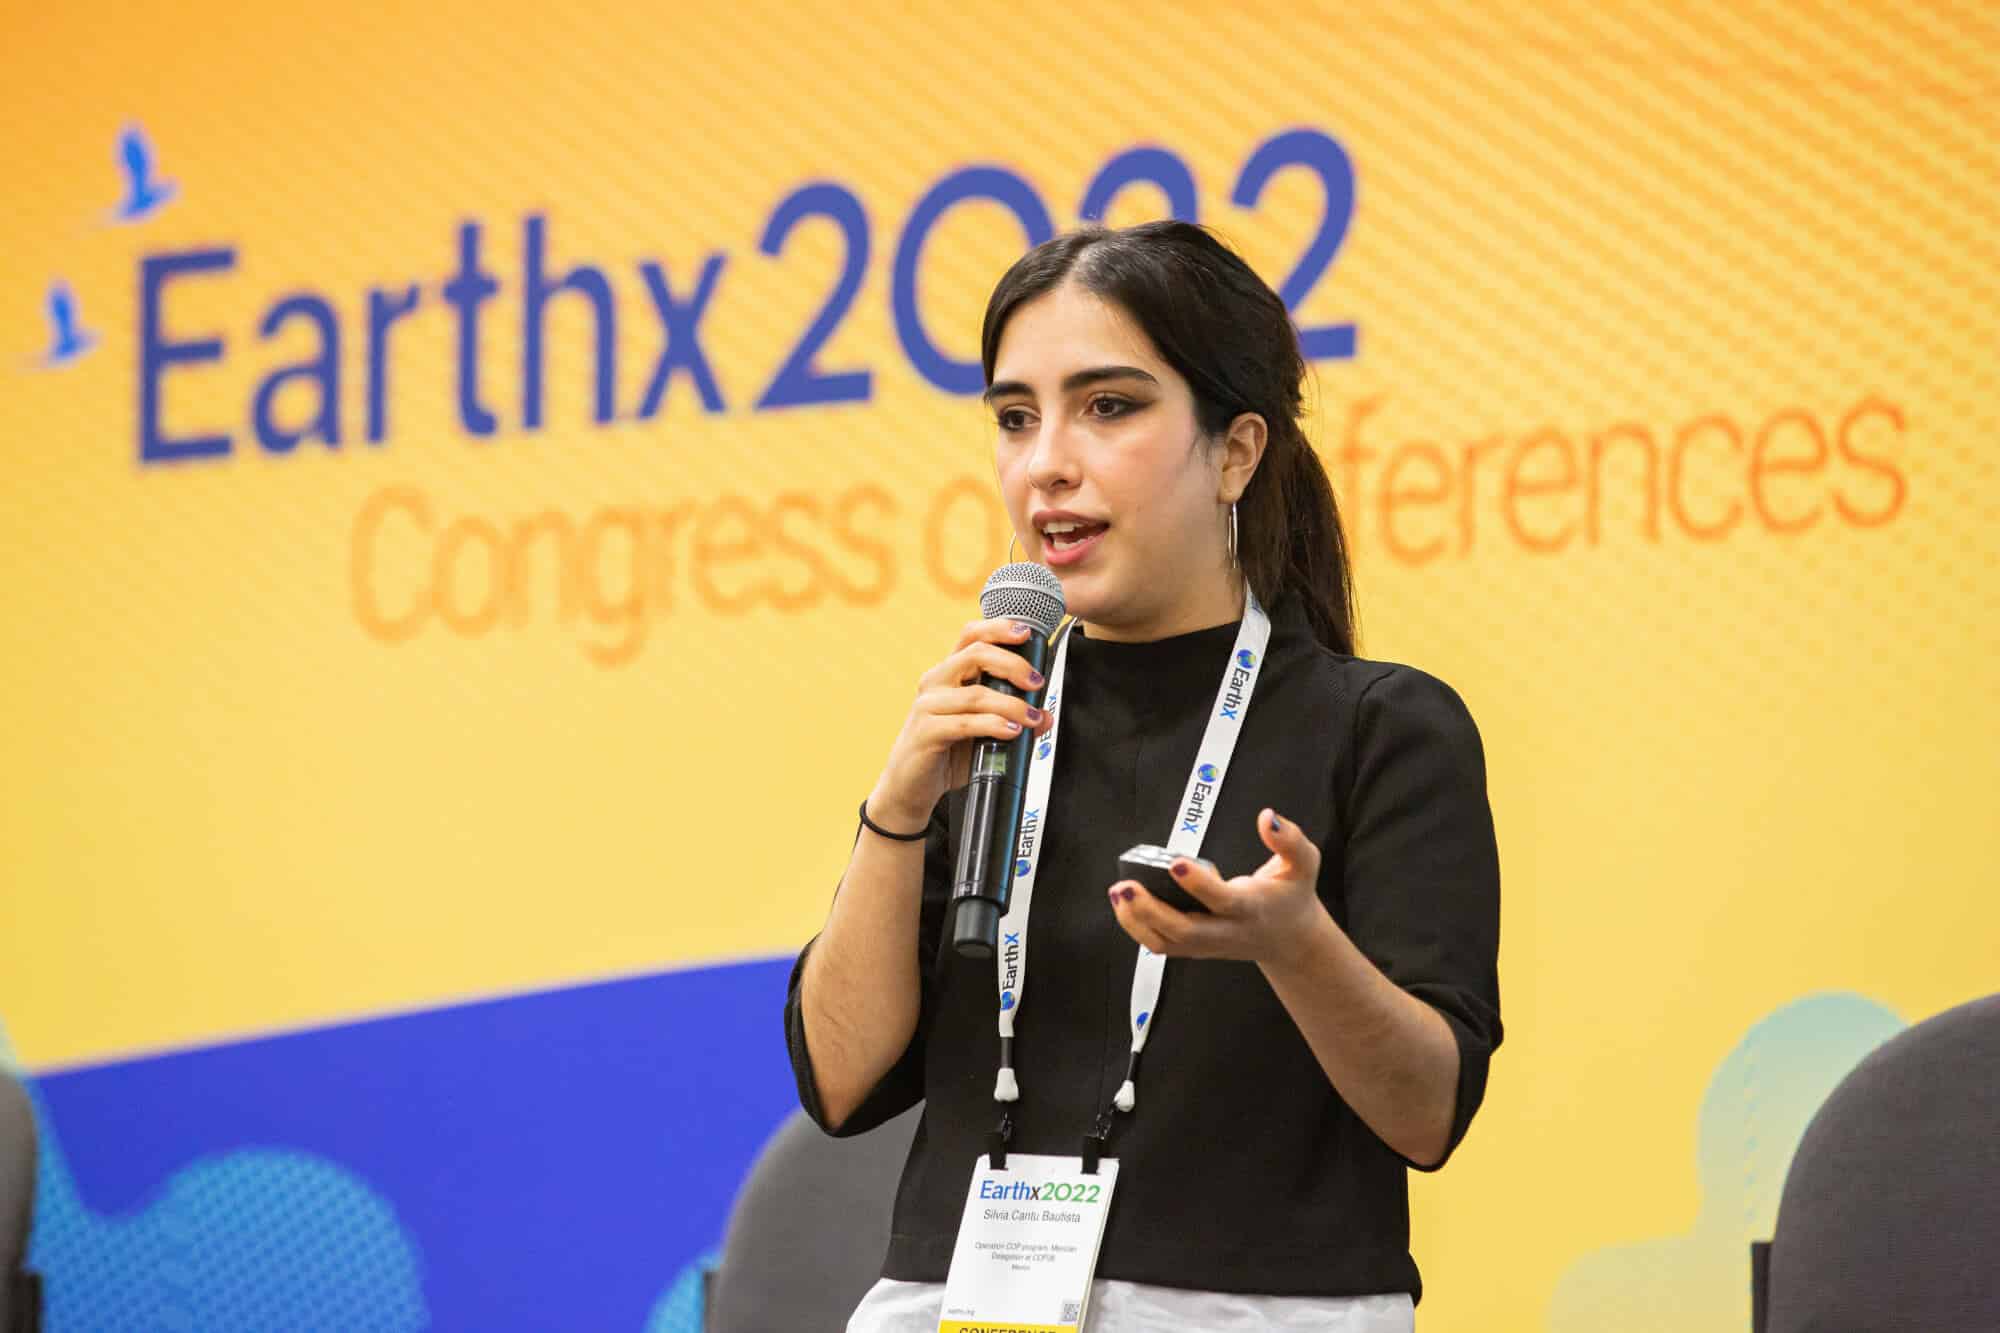 EarthxConnect: Innovator Commercialization Showcase